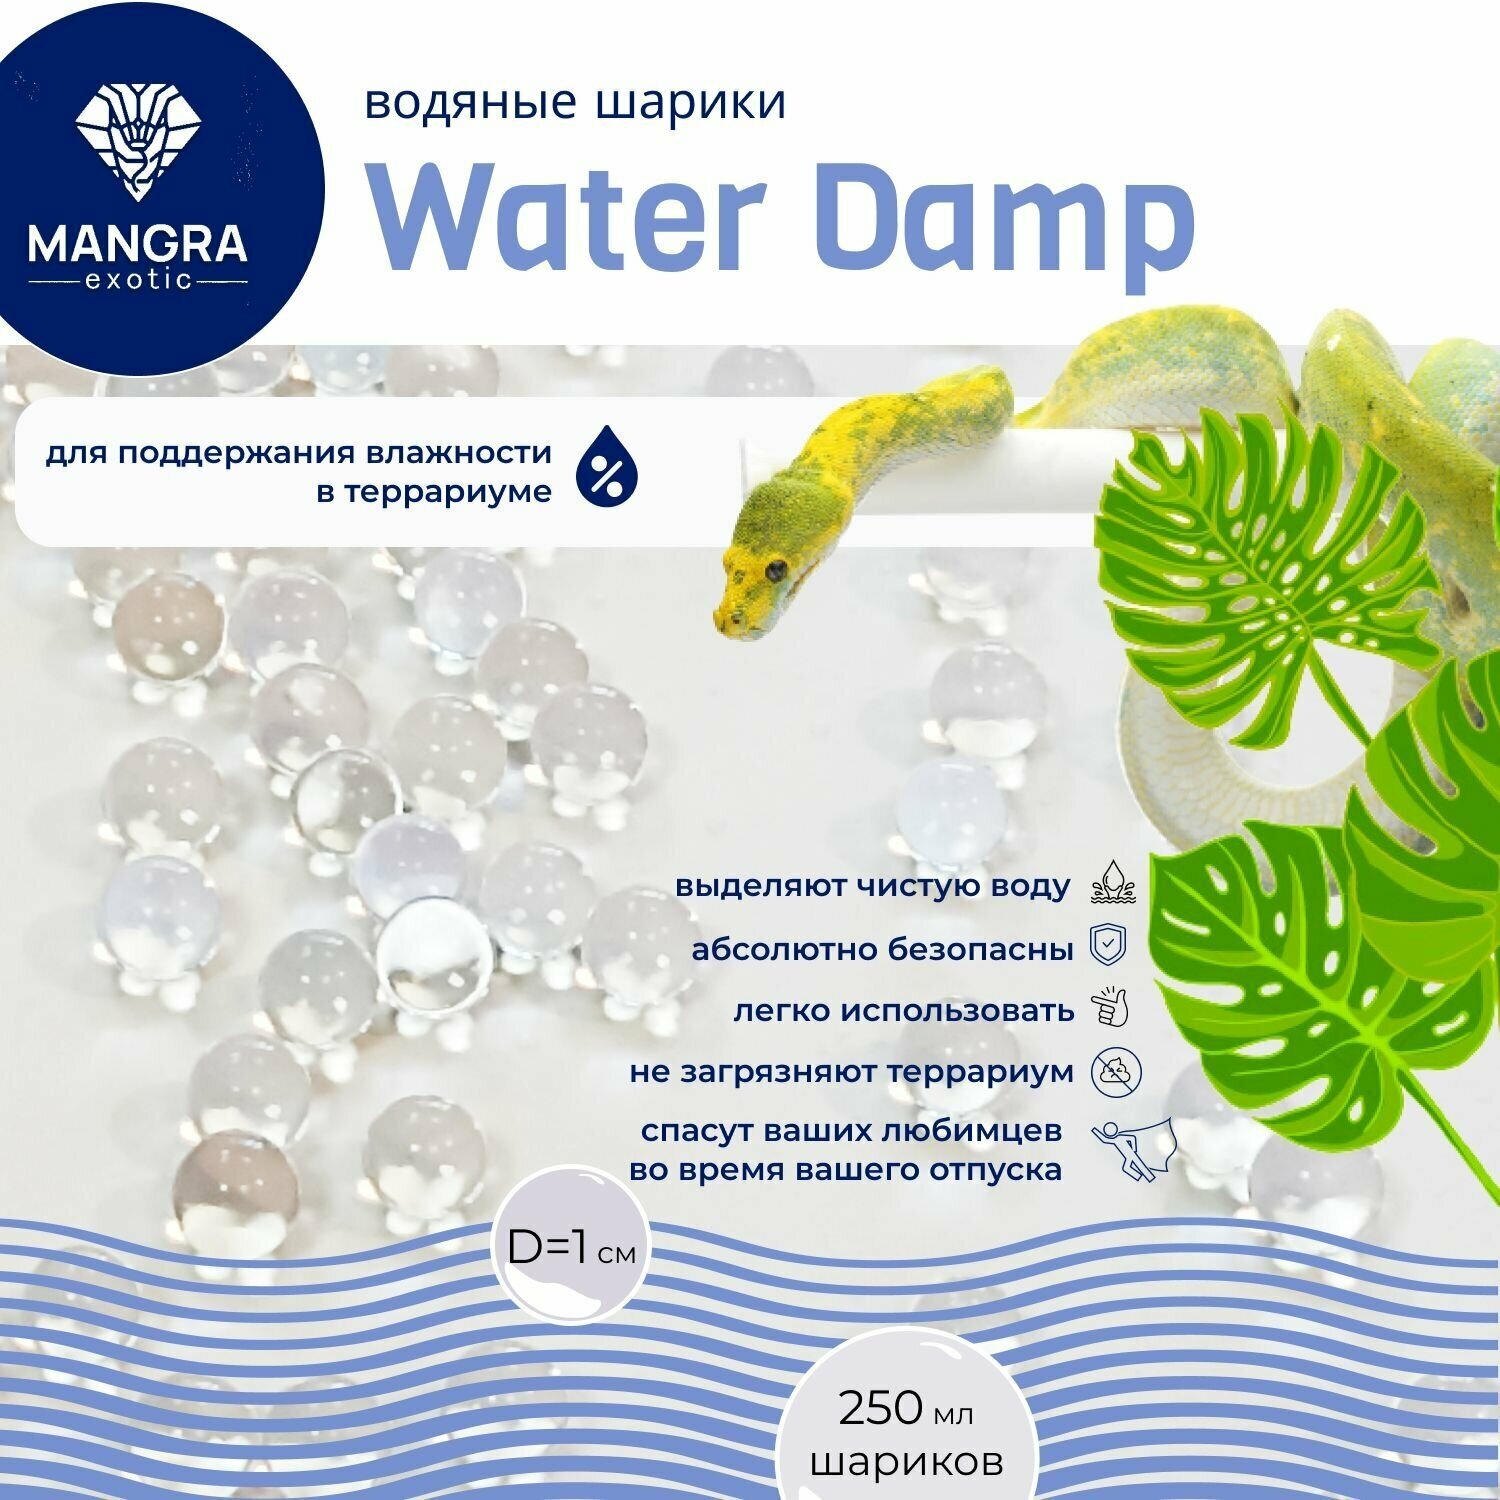 Водяные шарики MANGRA exotic "Water Damp" (250 мл) - для поддержания влажности в террариуме